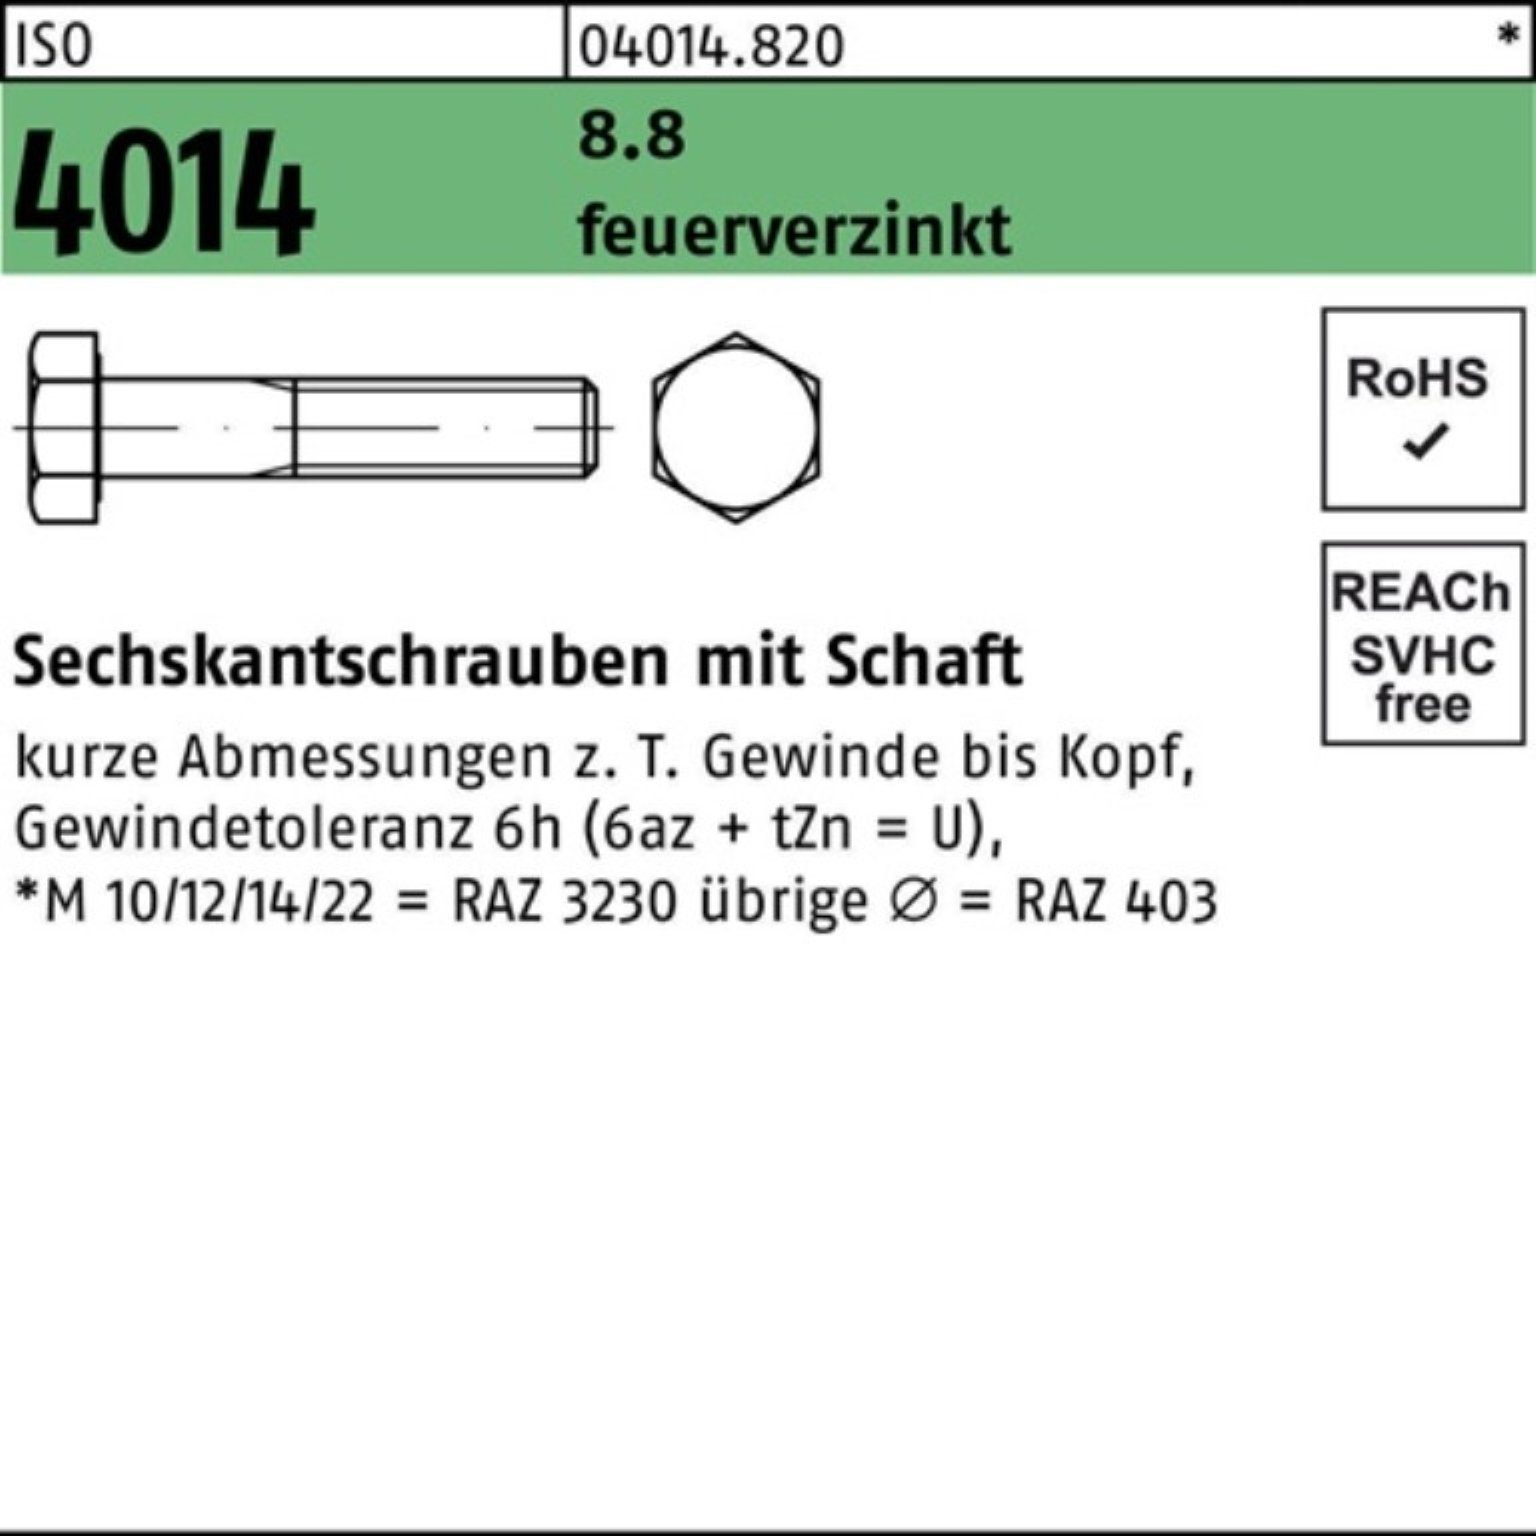 Bufab Sechskantschraube 100er Pack Sechskantschraube ISO 4014 Schaft M16x 55 8.8 feuerverz. 50